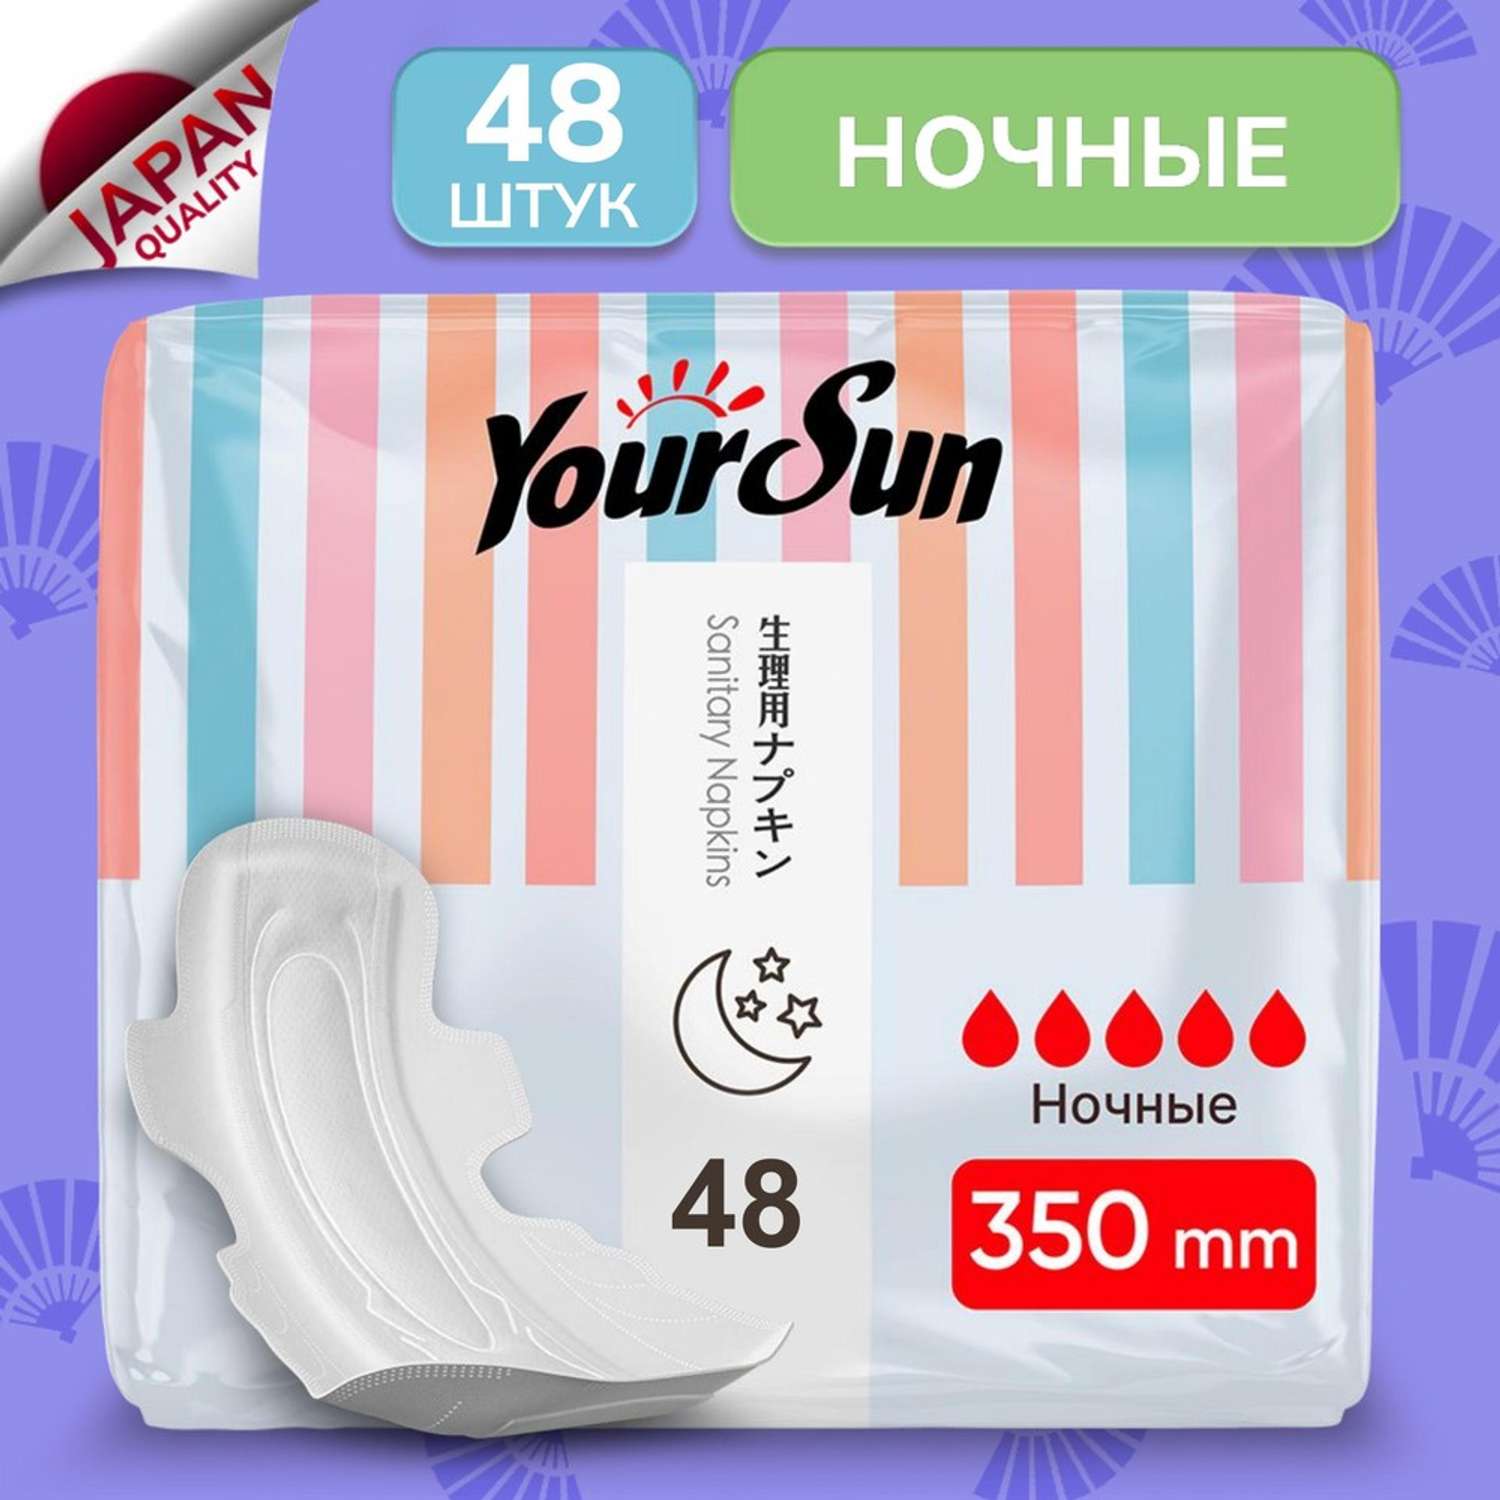 Гигиенические прокладки YourSun ночные с крылышками 35 см 48 шт - фото 1